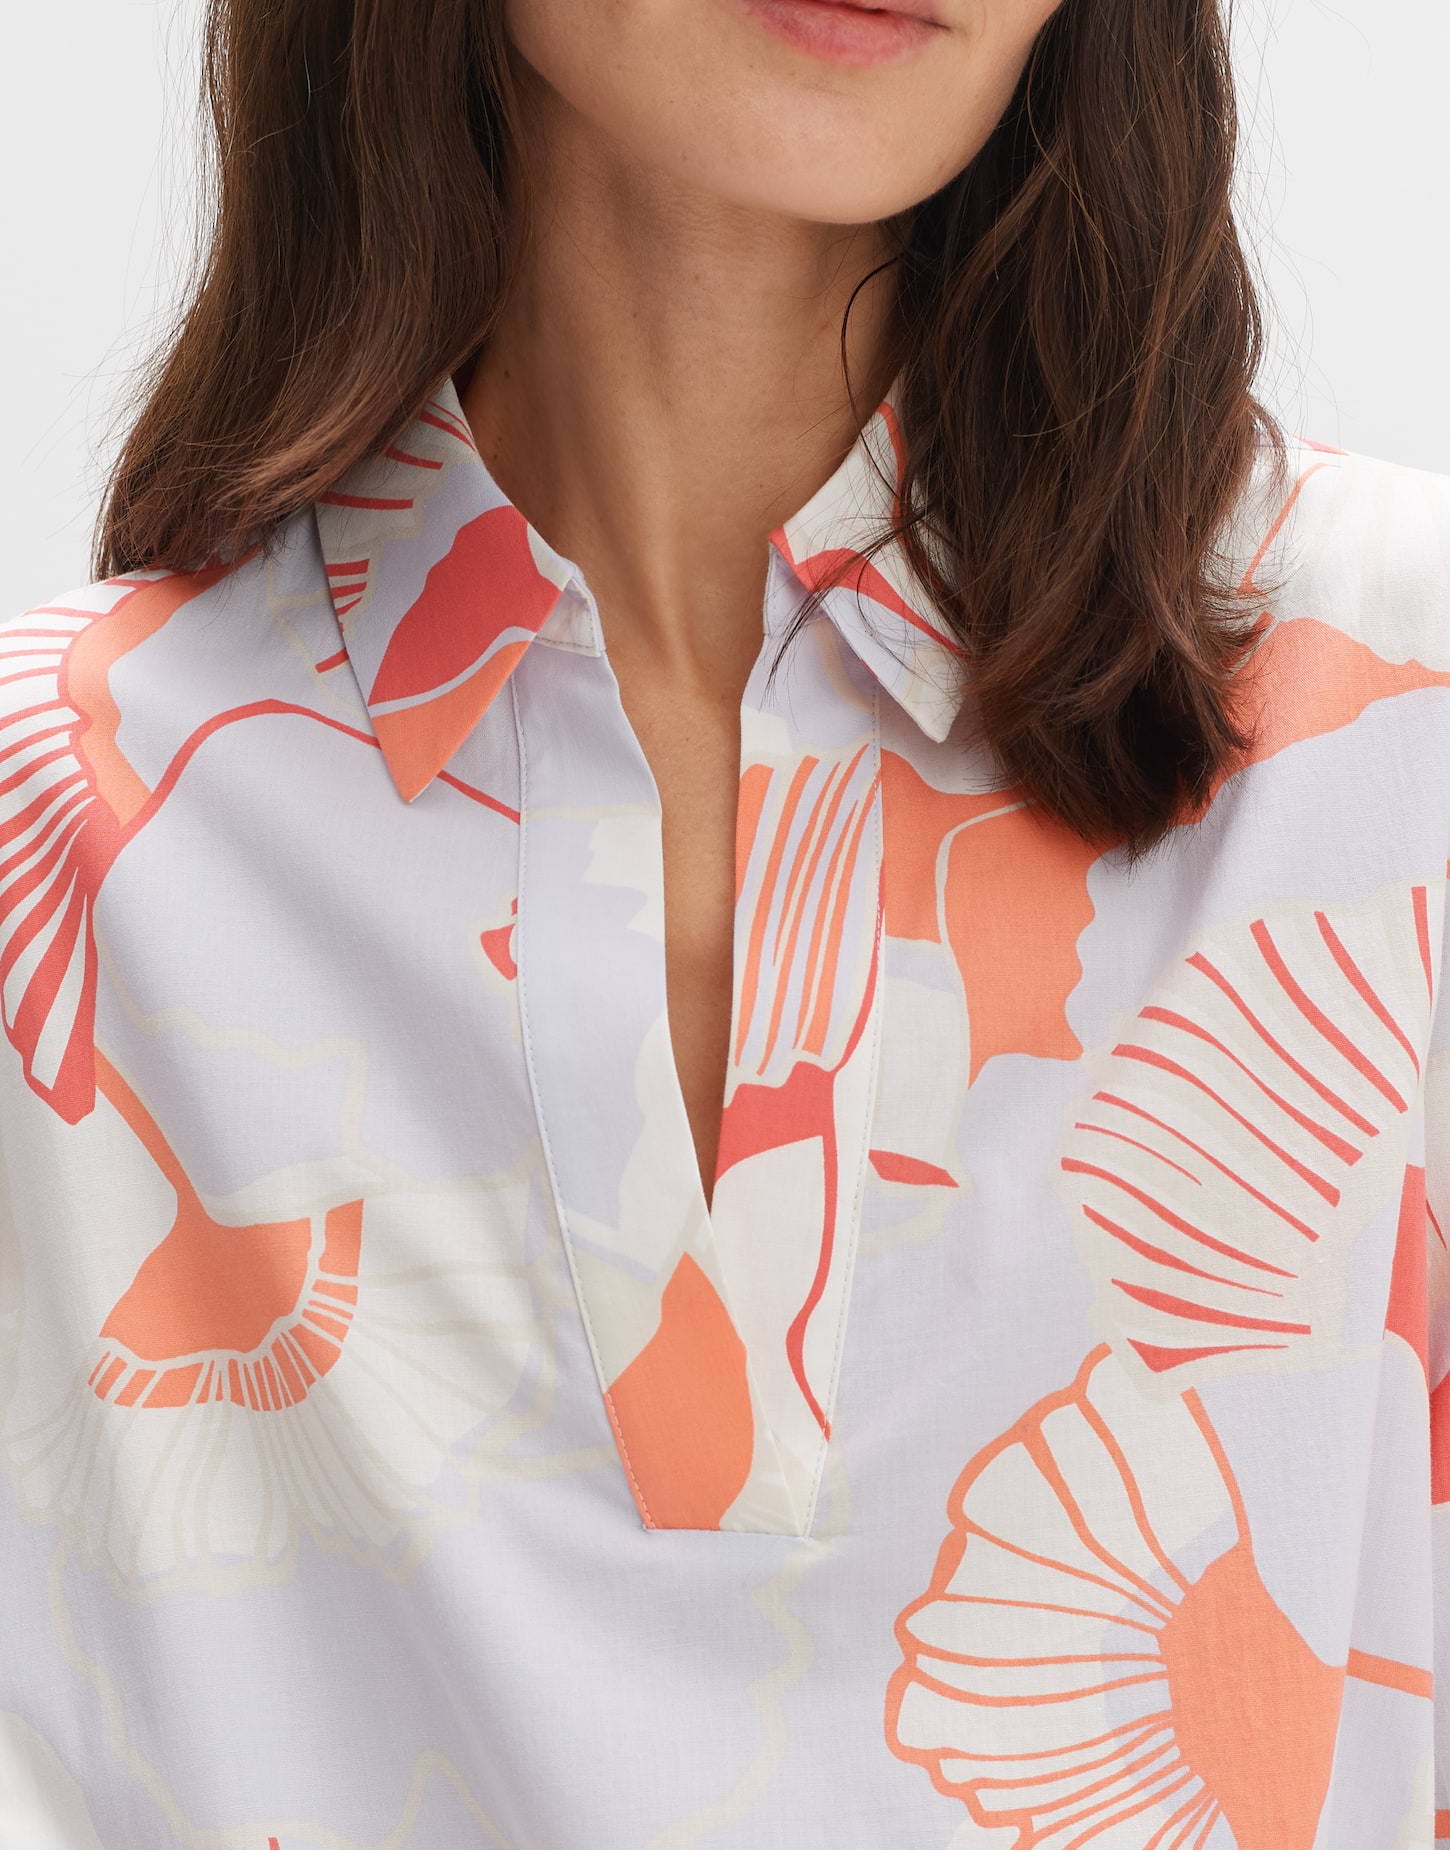 Opus -  Sommerliches Blusenkleid mit modernem Print - Wikaro